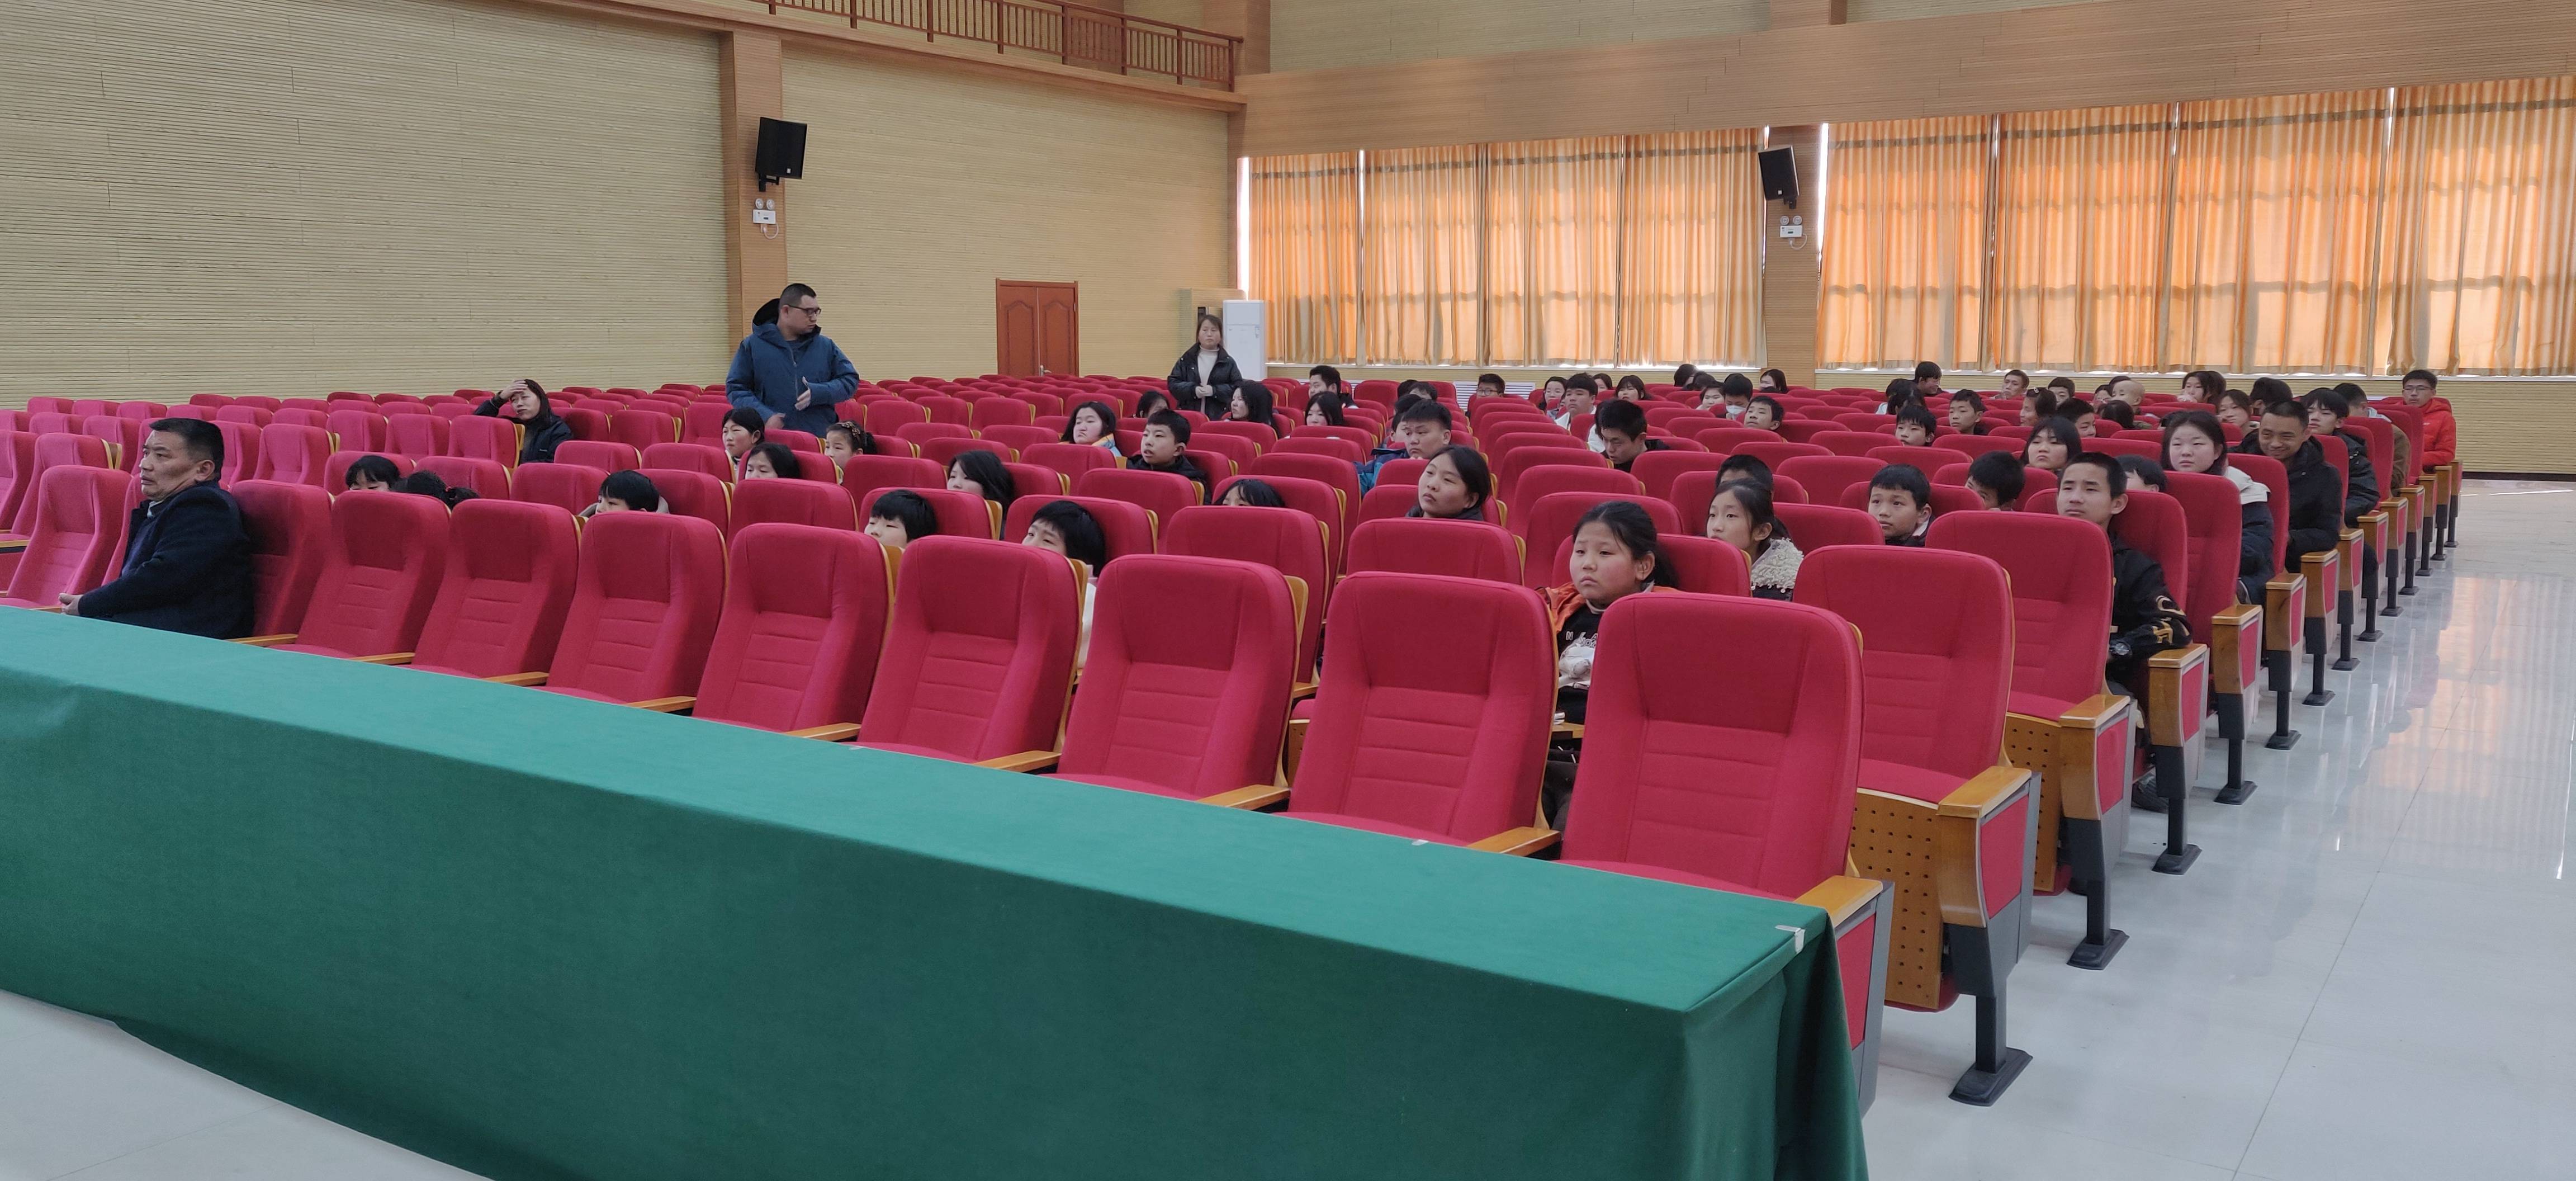 濮阳市特殊教育学校举办“周末观影”活动 